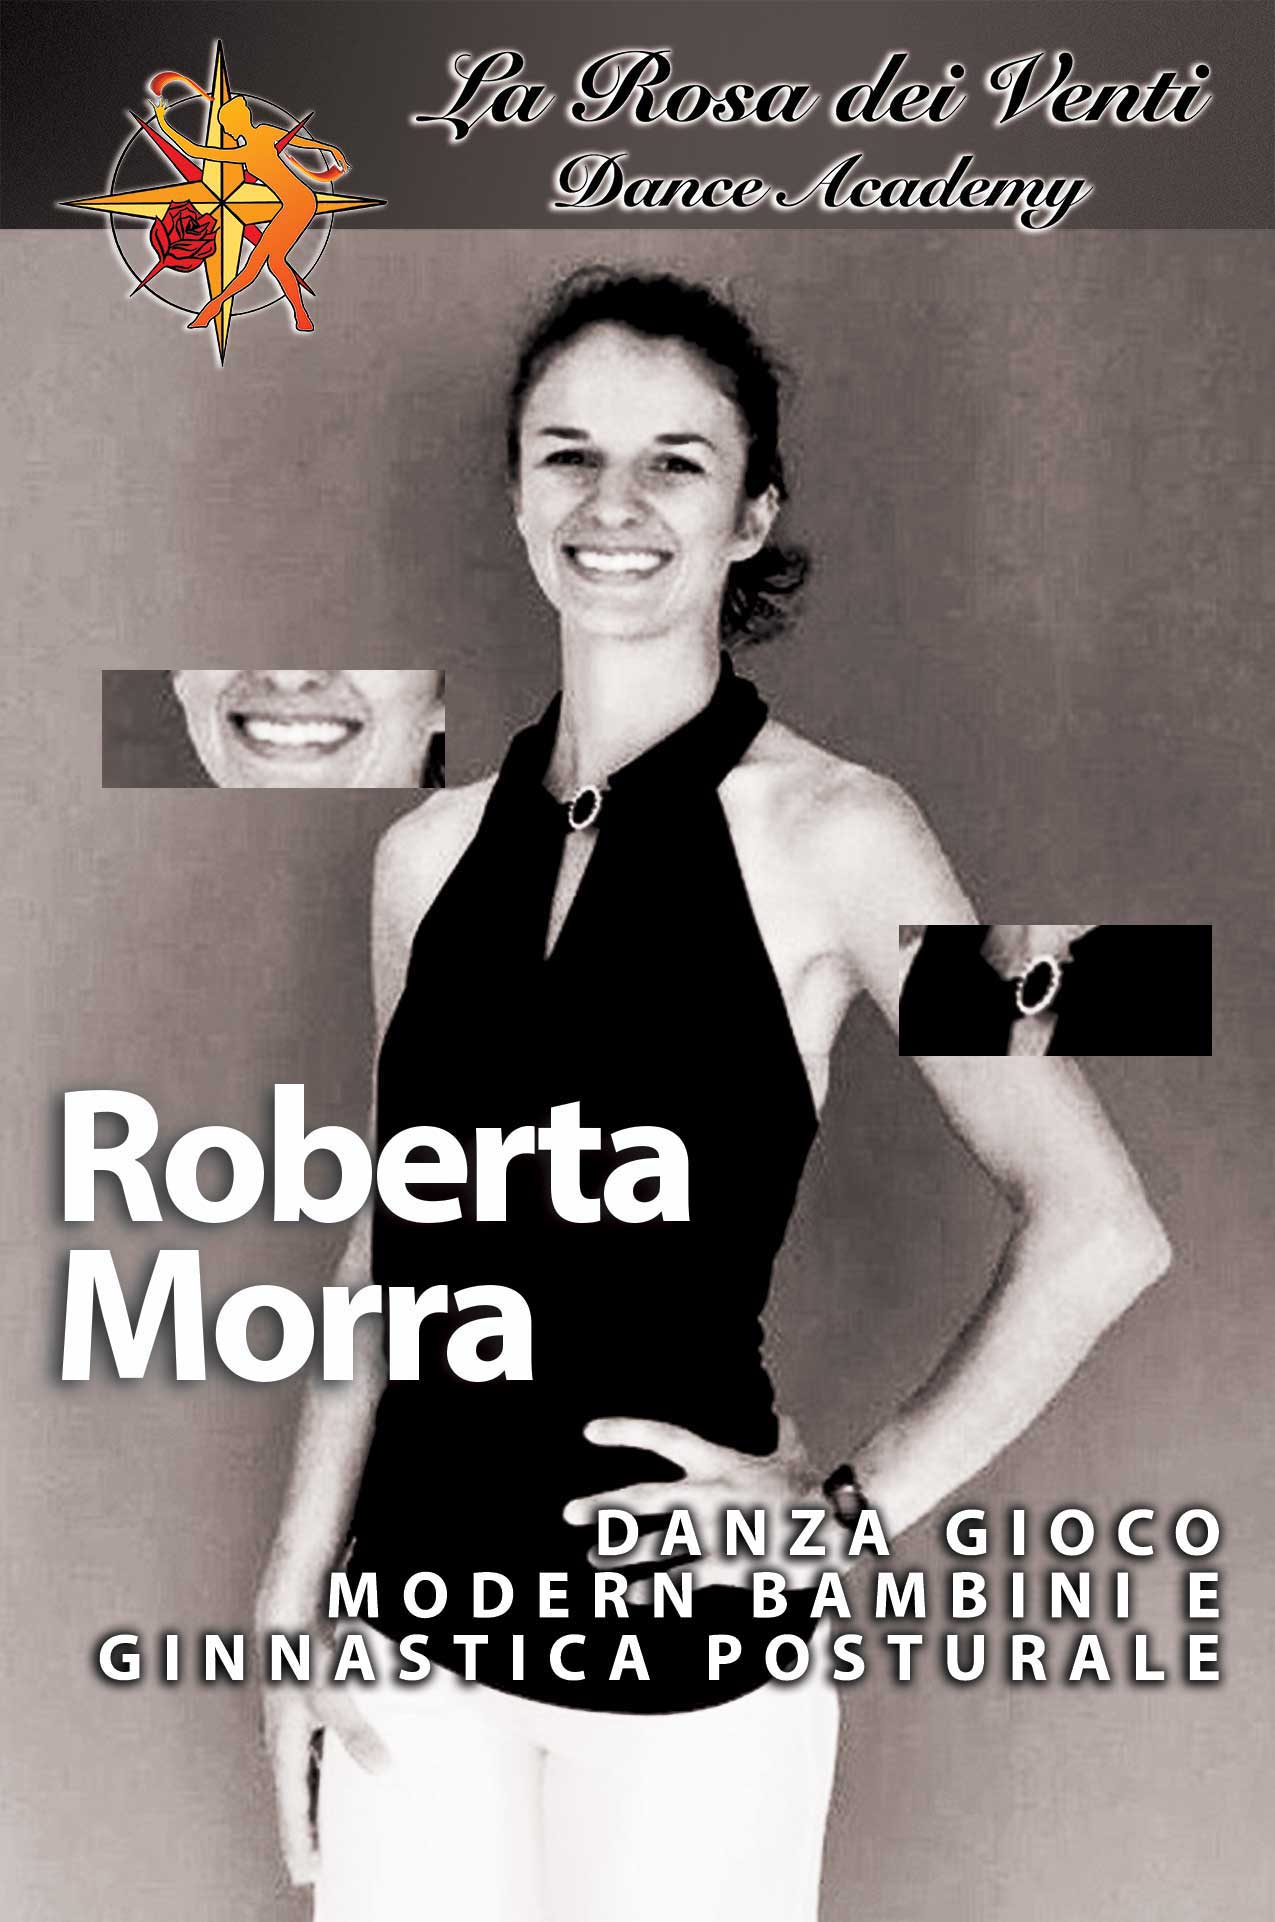 Roberta Morra Danza gioco - modern bambini - ginnastica posturale La Rosa dei Venti Dance Accademy